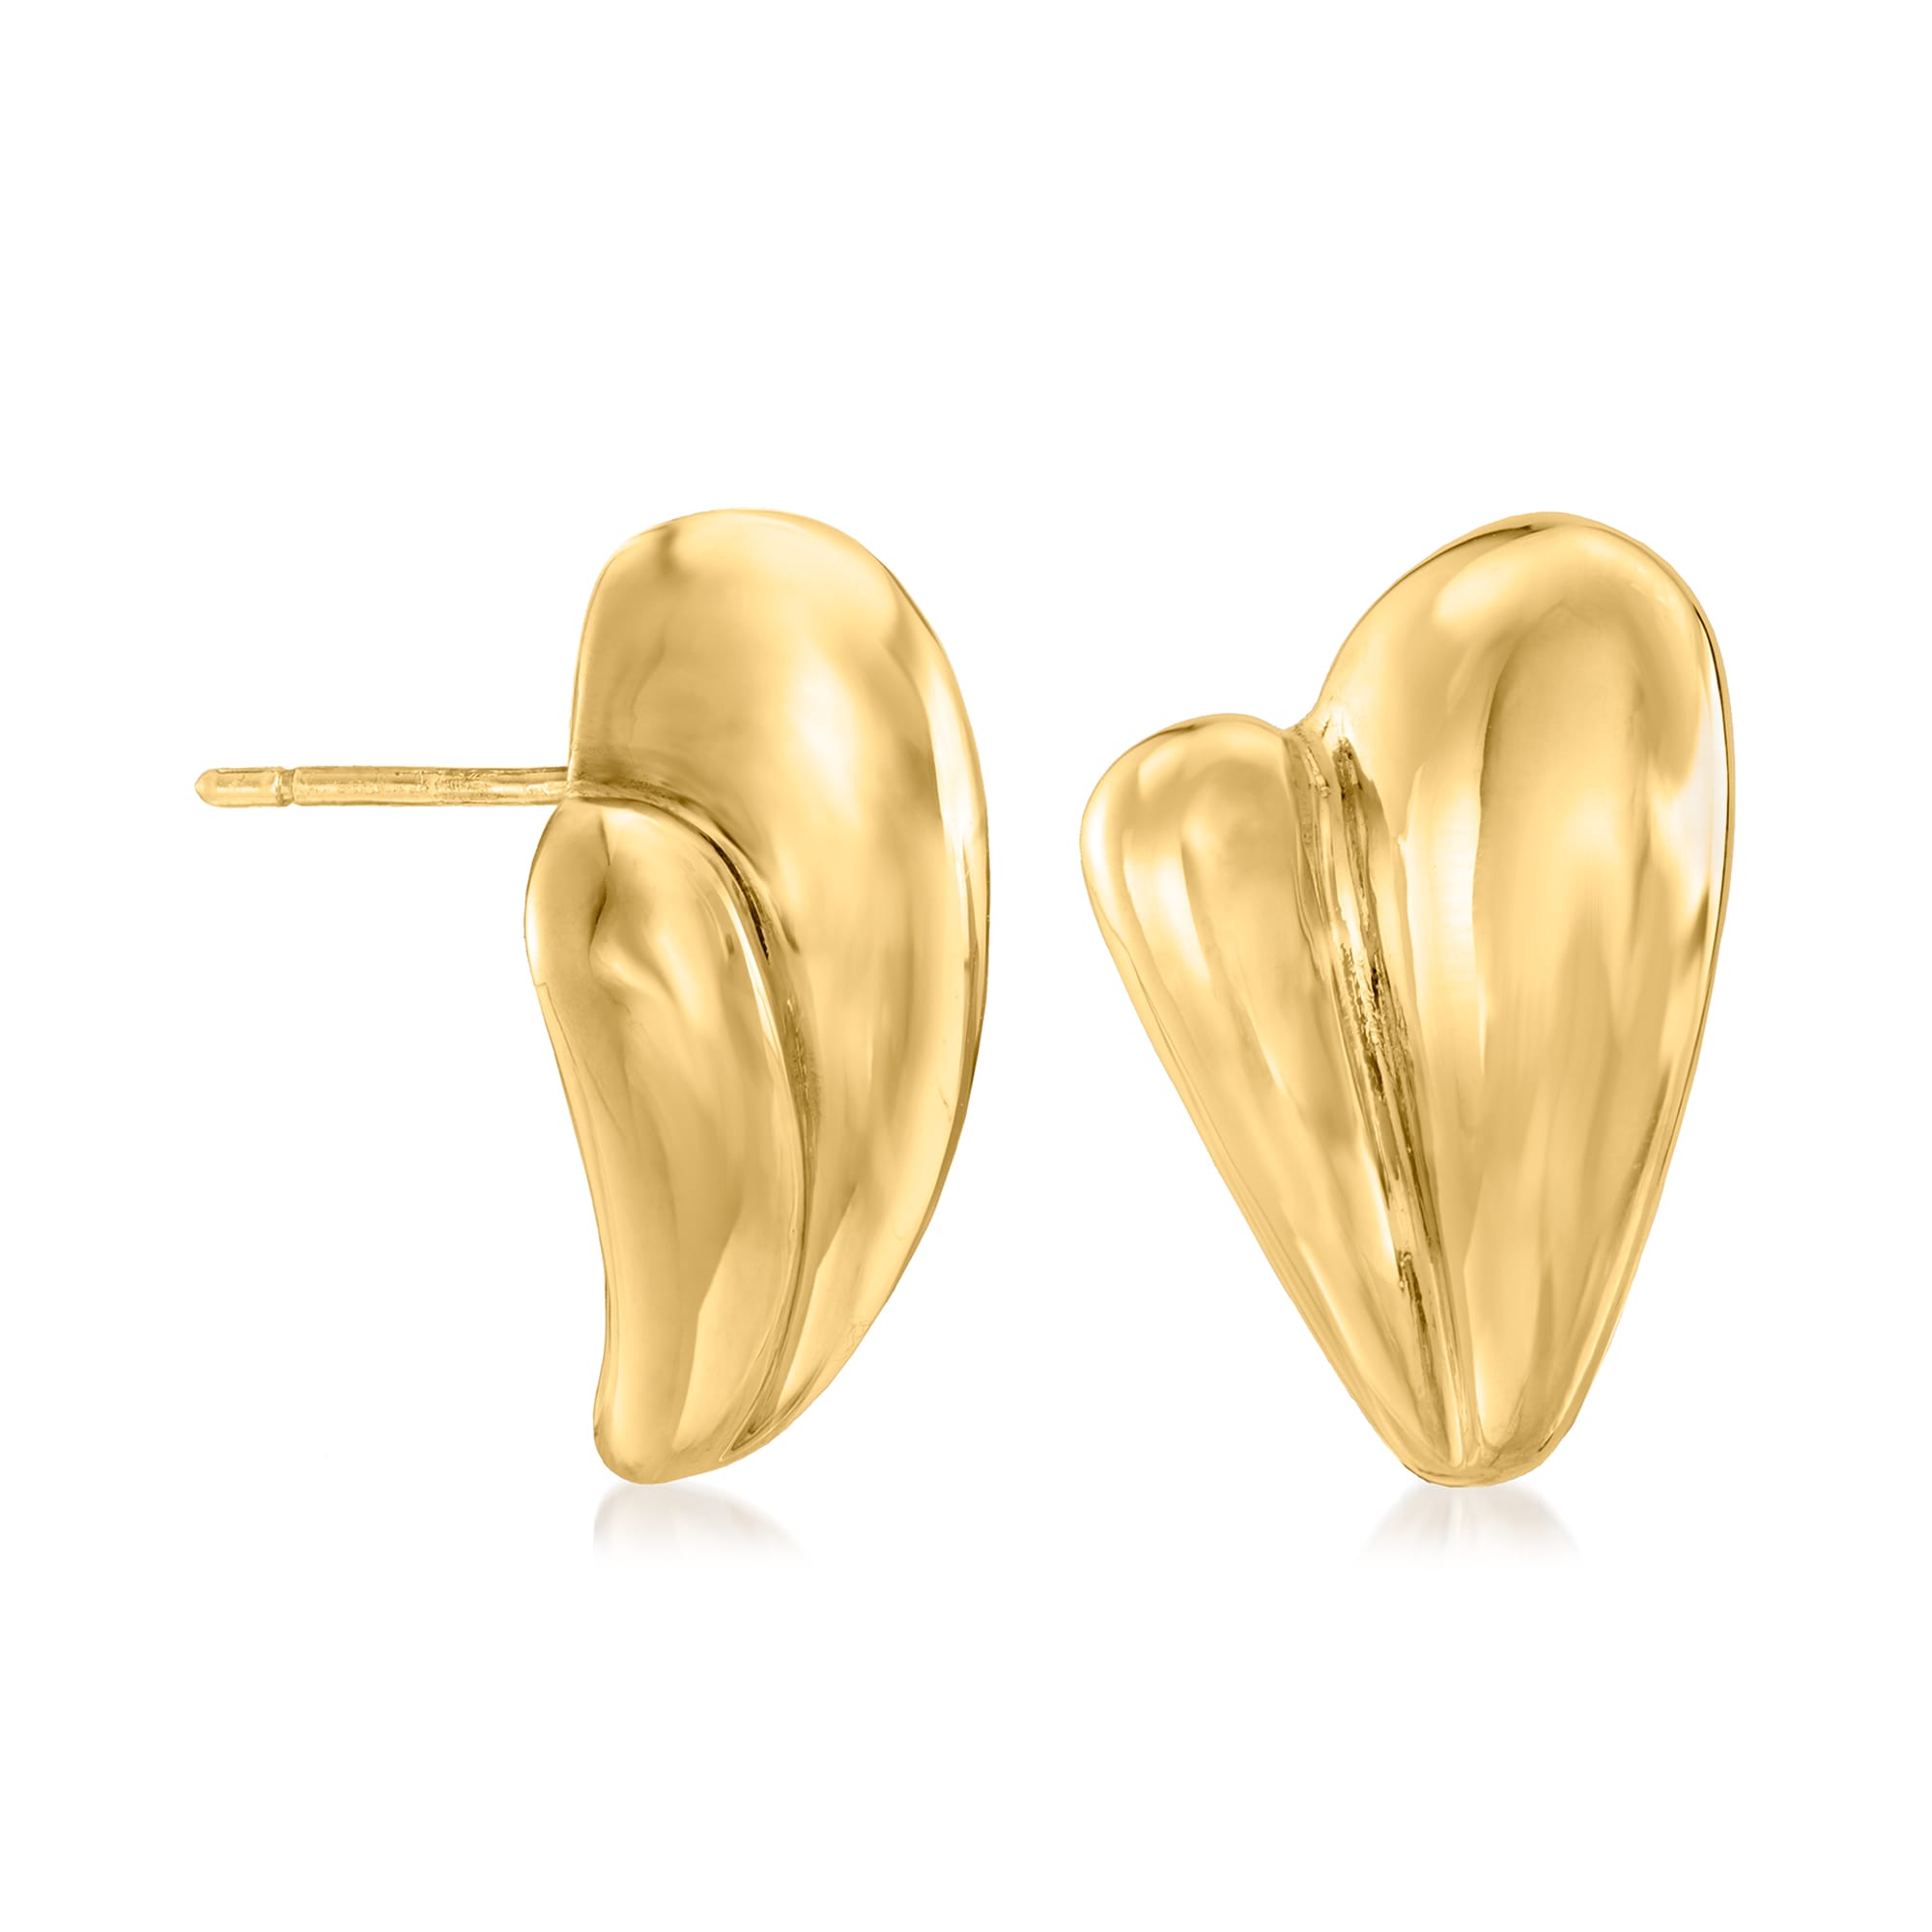 Italian 14kt Yellow Gold Heart Earrings | Ross-Simons